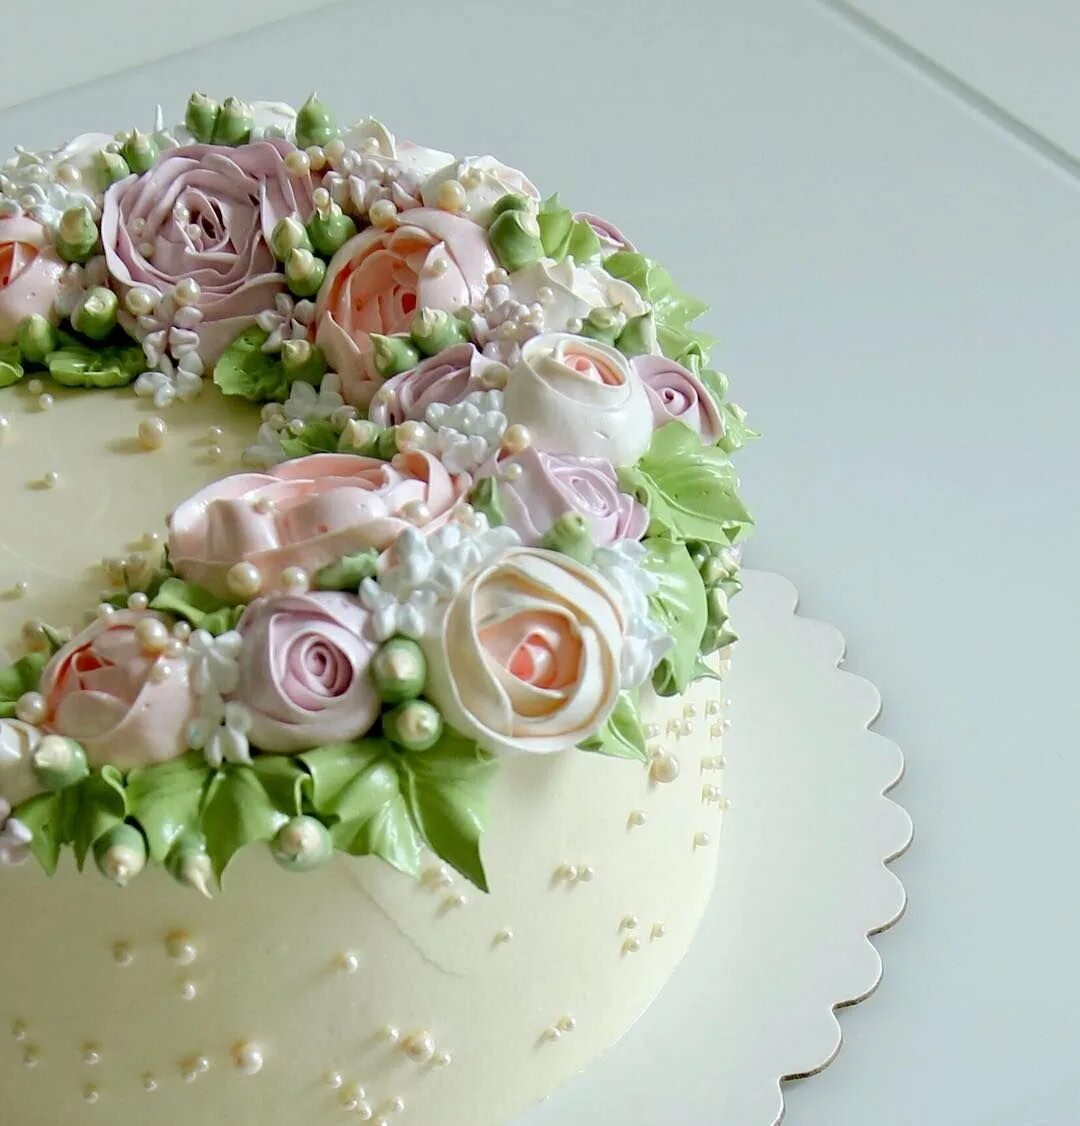 Кремовые украшения. Торт с цветами. Кремовое украшение торта. Торт с кремовыми цветами. Красивые кремовые торты.